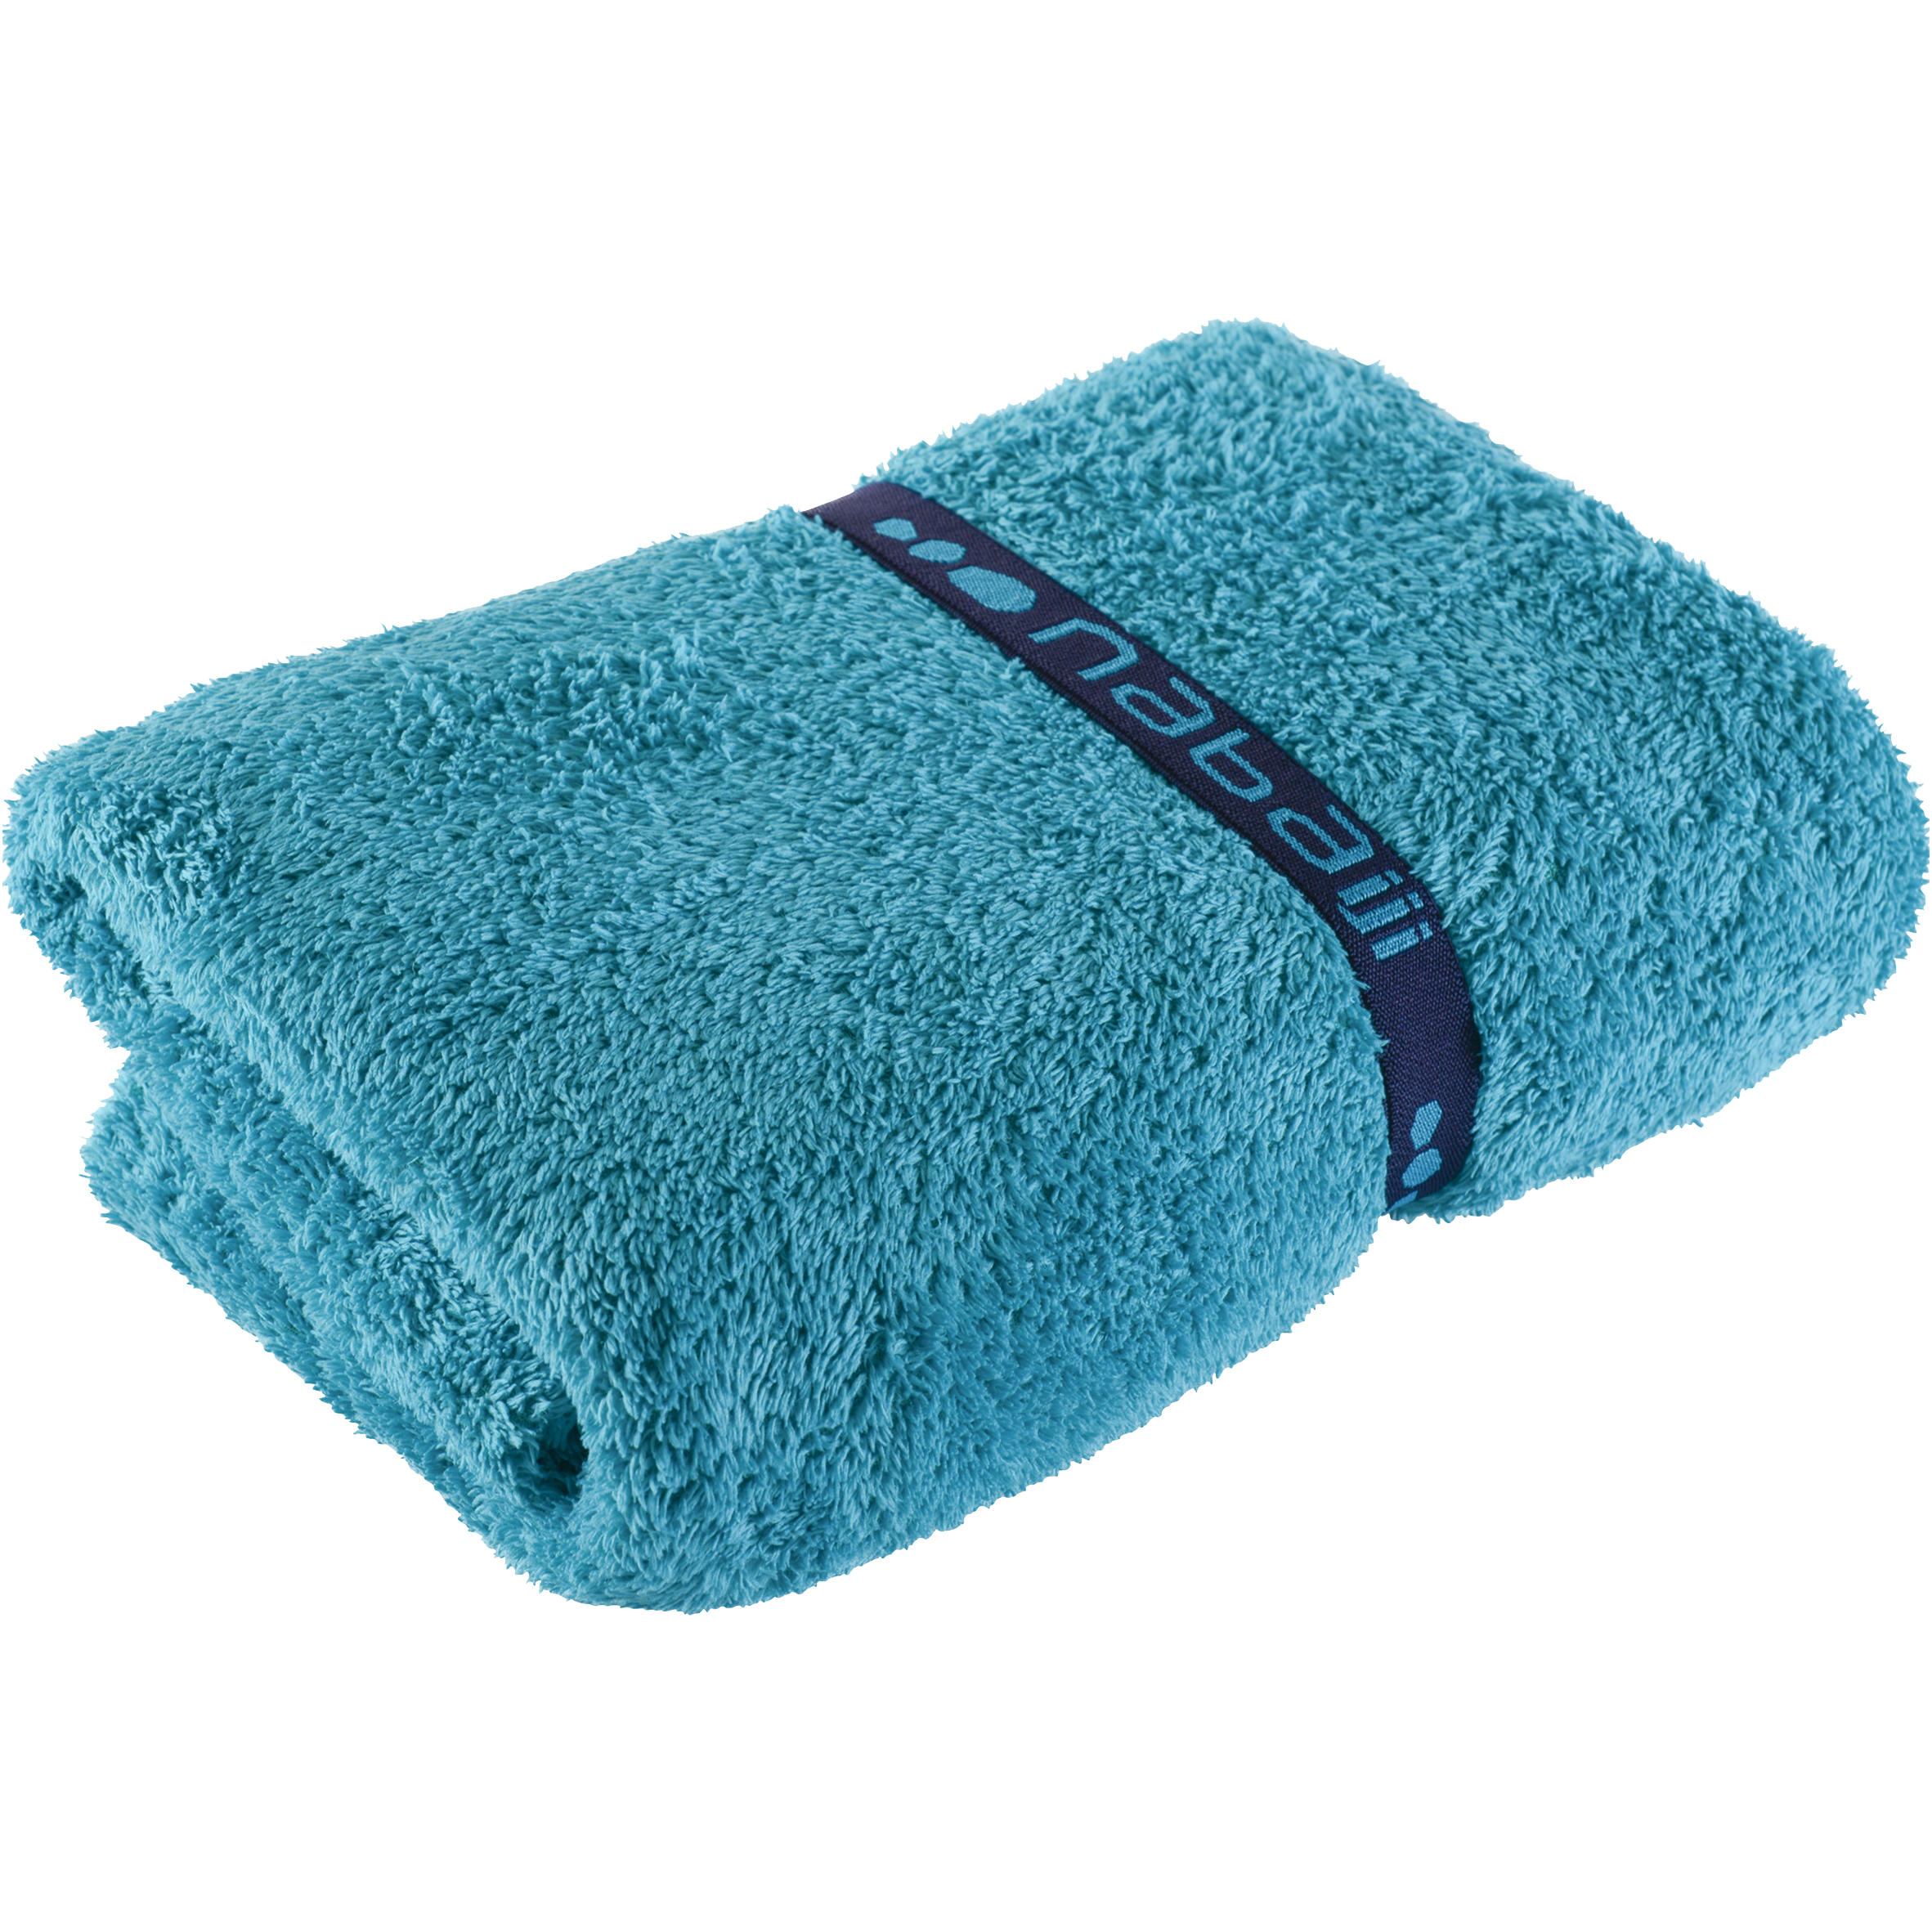 microfibre towel decathlon